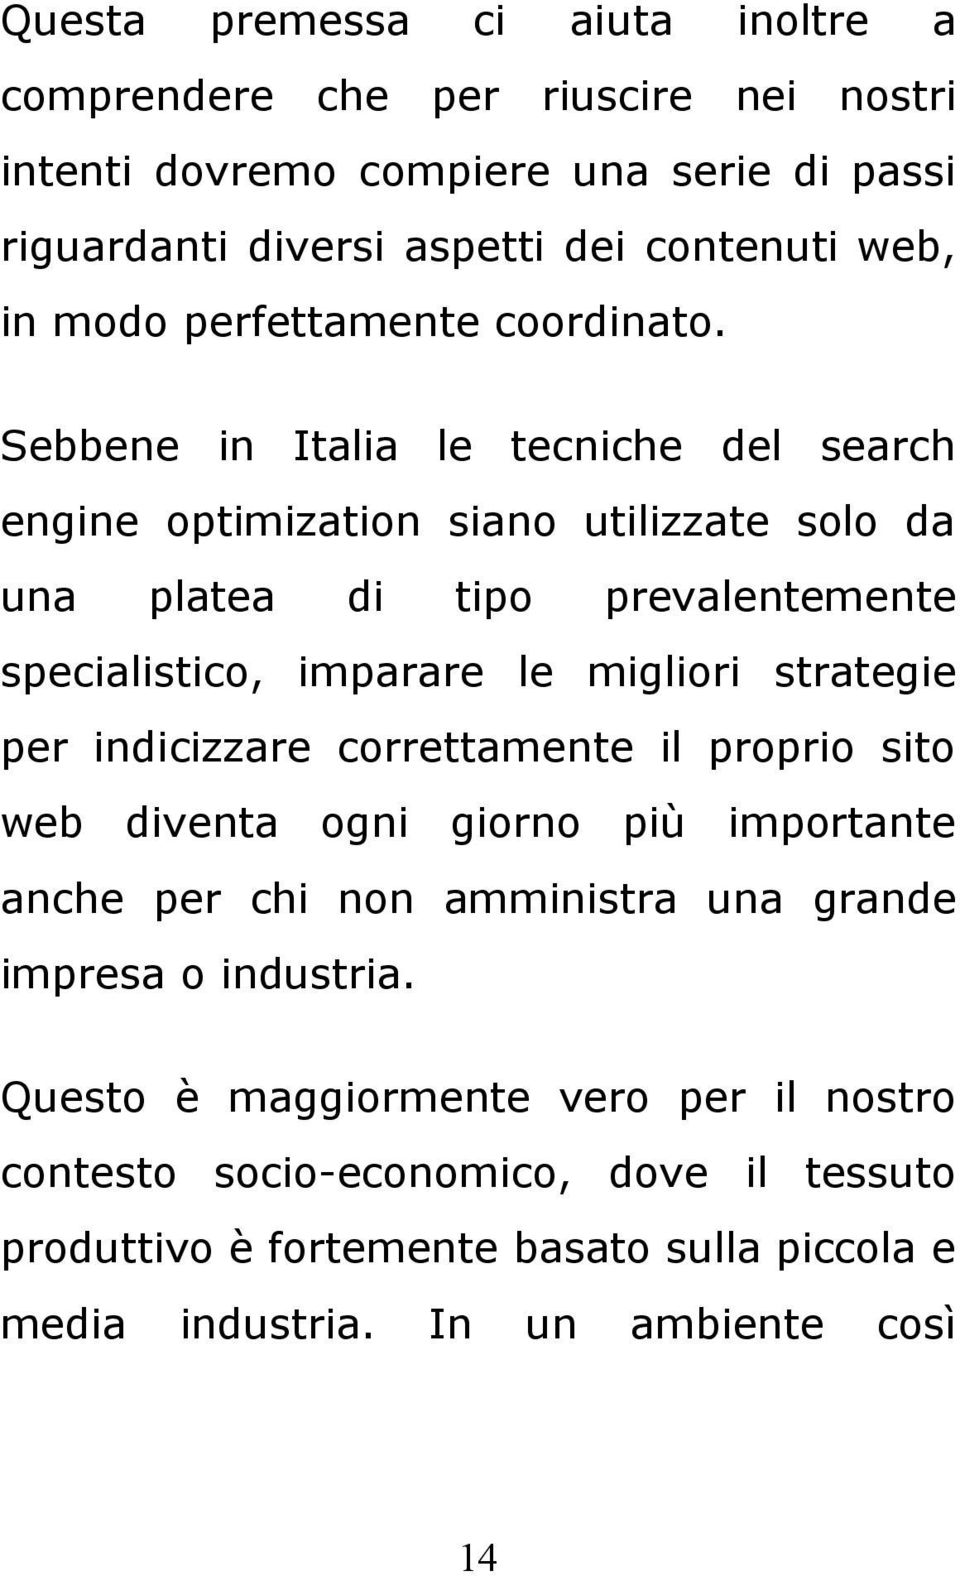 Sebbene in Italia le tecniche del search engine optimization siano utilizzate solo da una platea di tipo prevalentemente specialistico, imparare le migliori strategie per